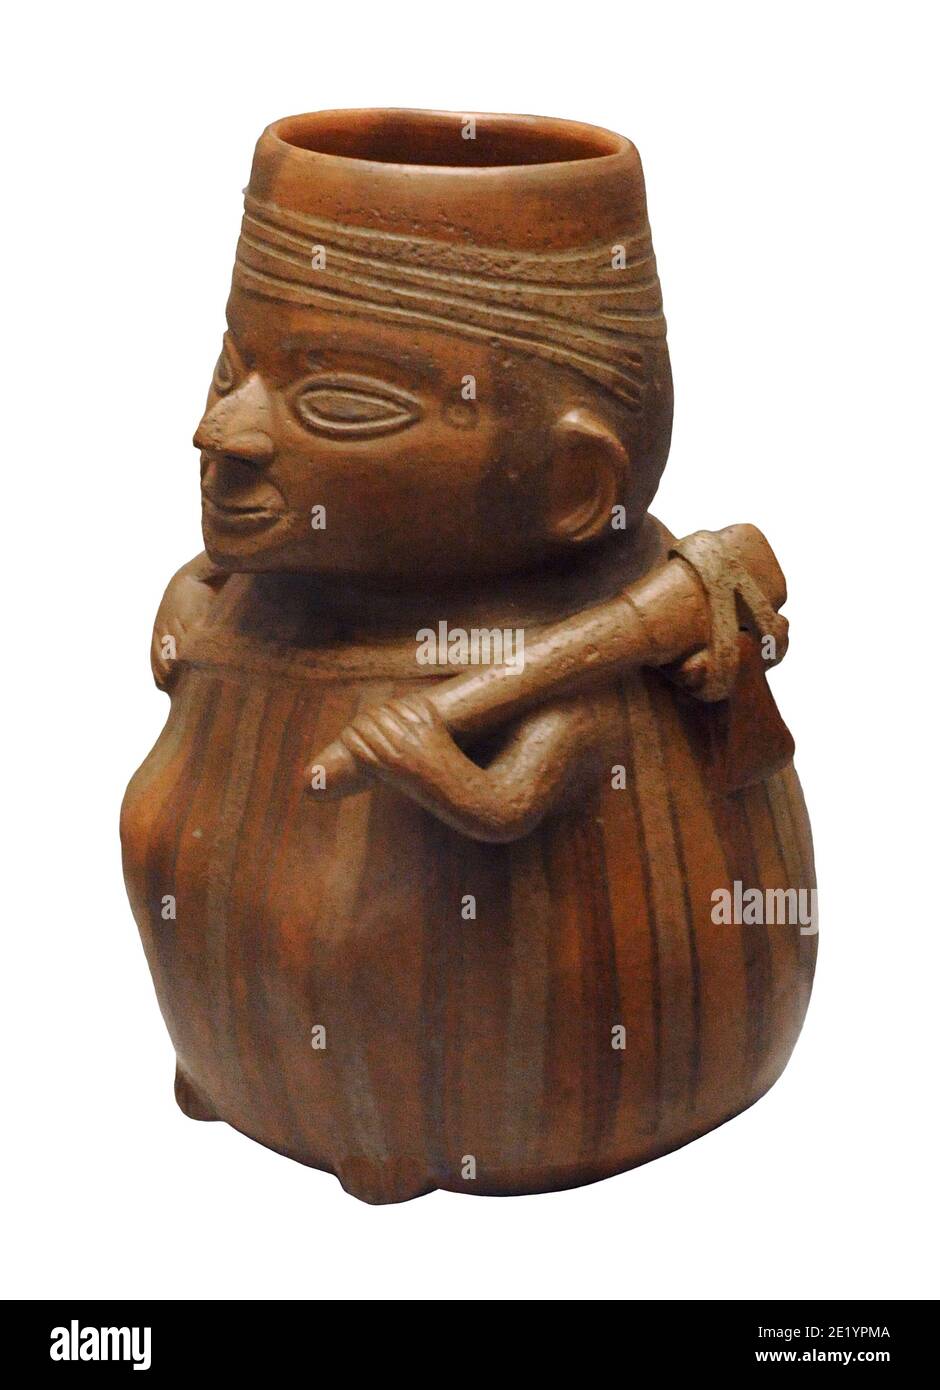 Gefäß, das einen Bauern mit seinen Arbeitswerkzeugen darstellt. Keramik. Inka-Kultur (1400-1533 n. Chr.). Peru. Museum of the Americas. Madrid, Spanien. Stockfoto